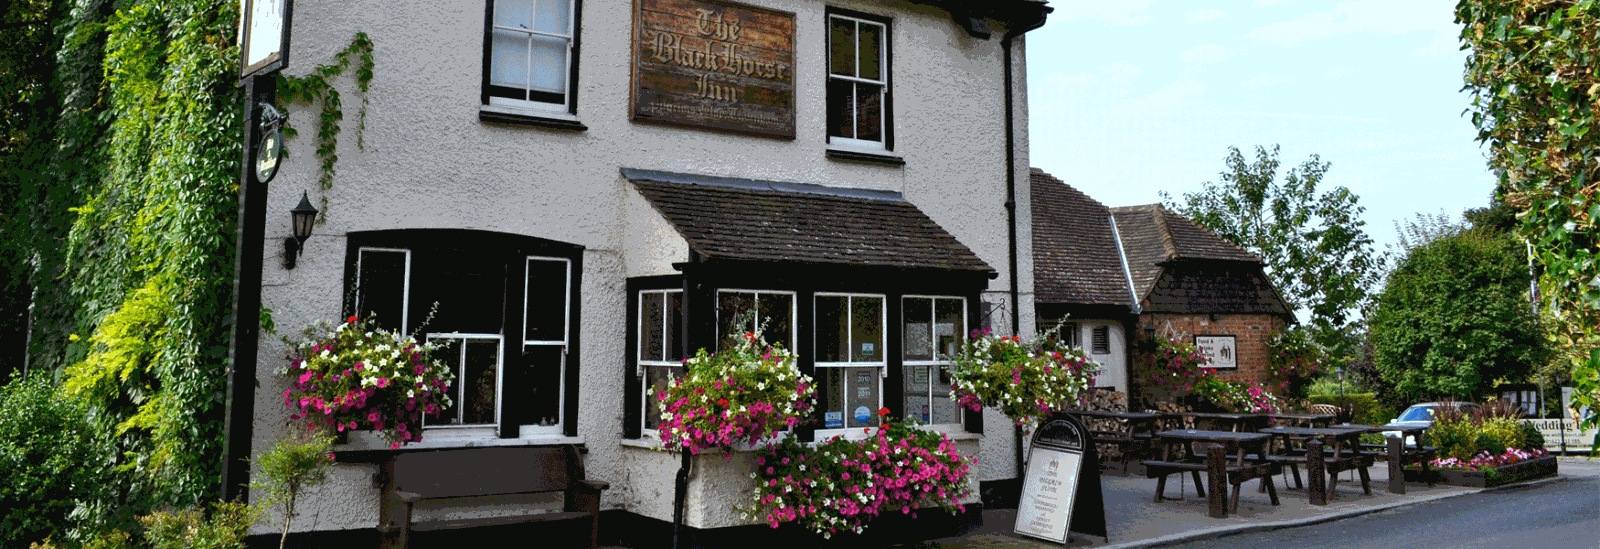 The Black Horse Inn, Thurnham